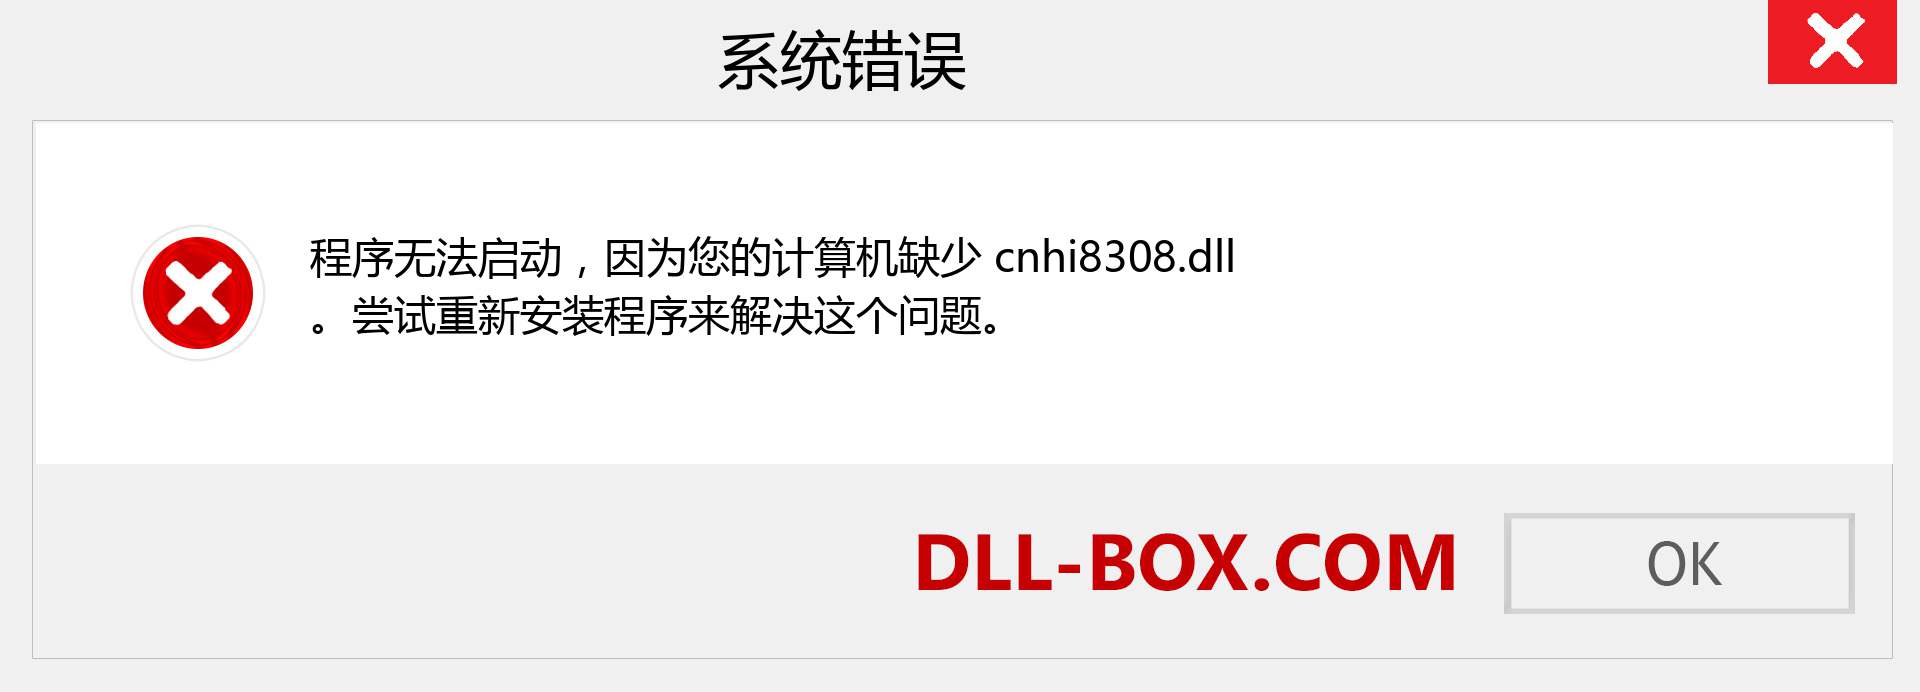 cnhi8308.dll 文件丢失？。 适用于 Windows 7、8、10 的下载 - 修复 Windows、照片、图像上的 cnhi8308 dll 丢失错误